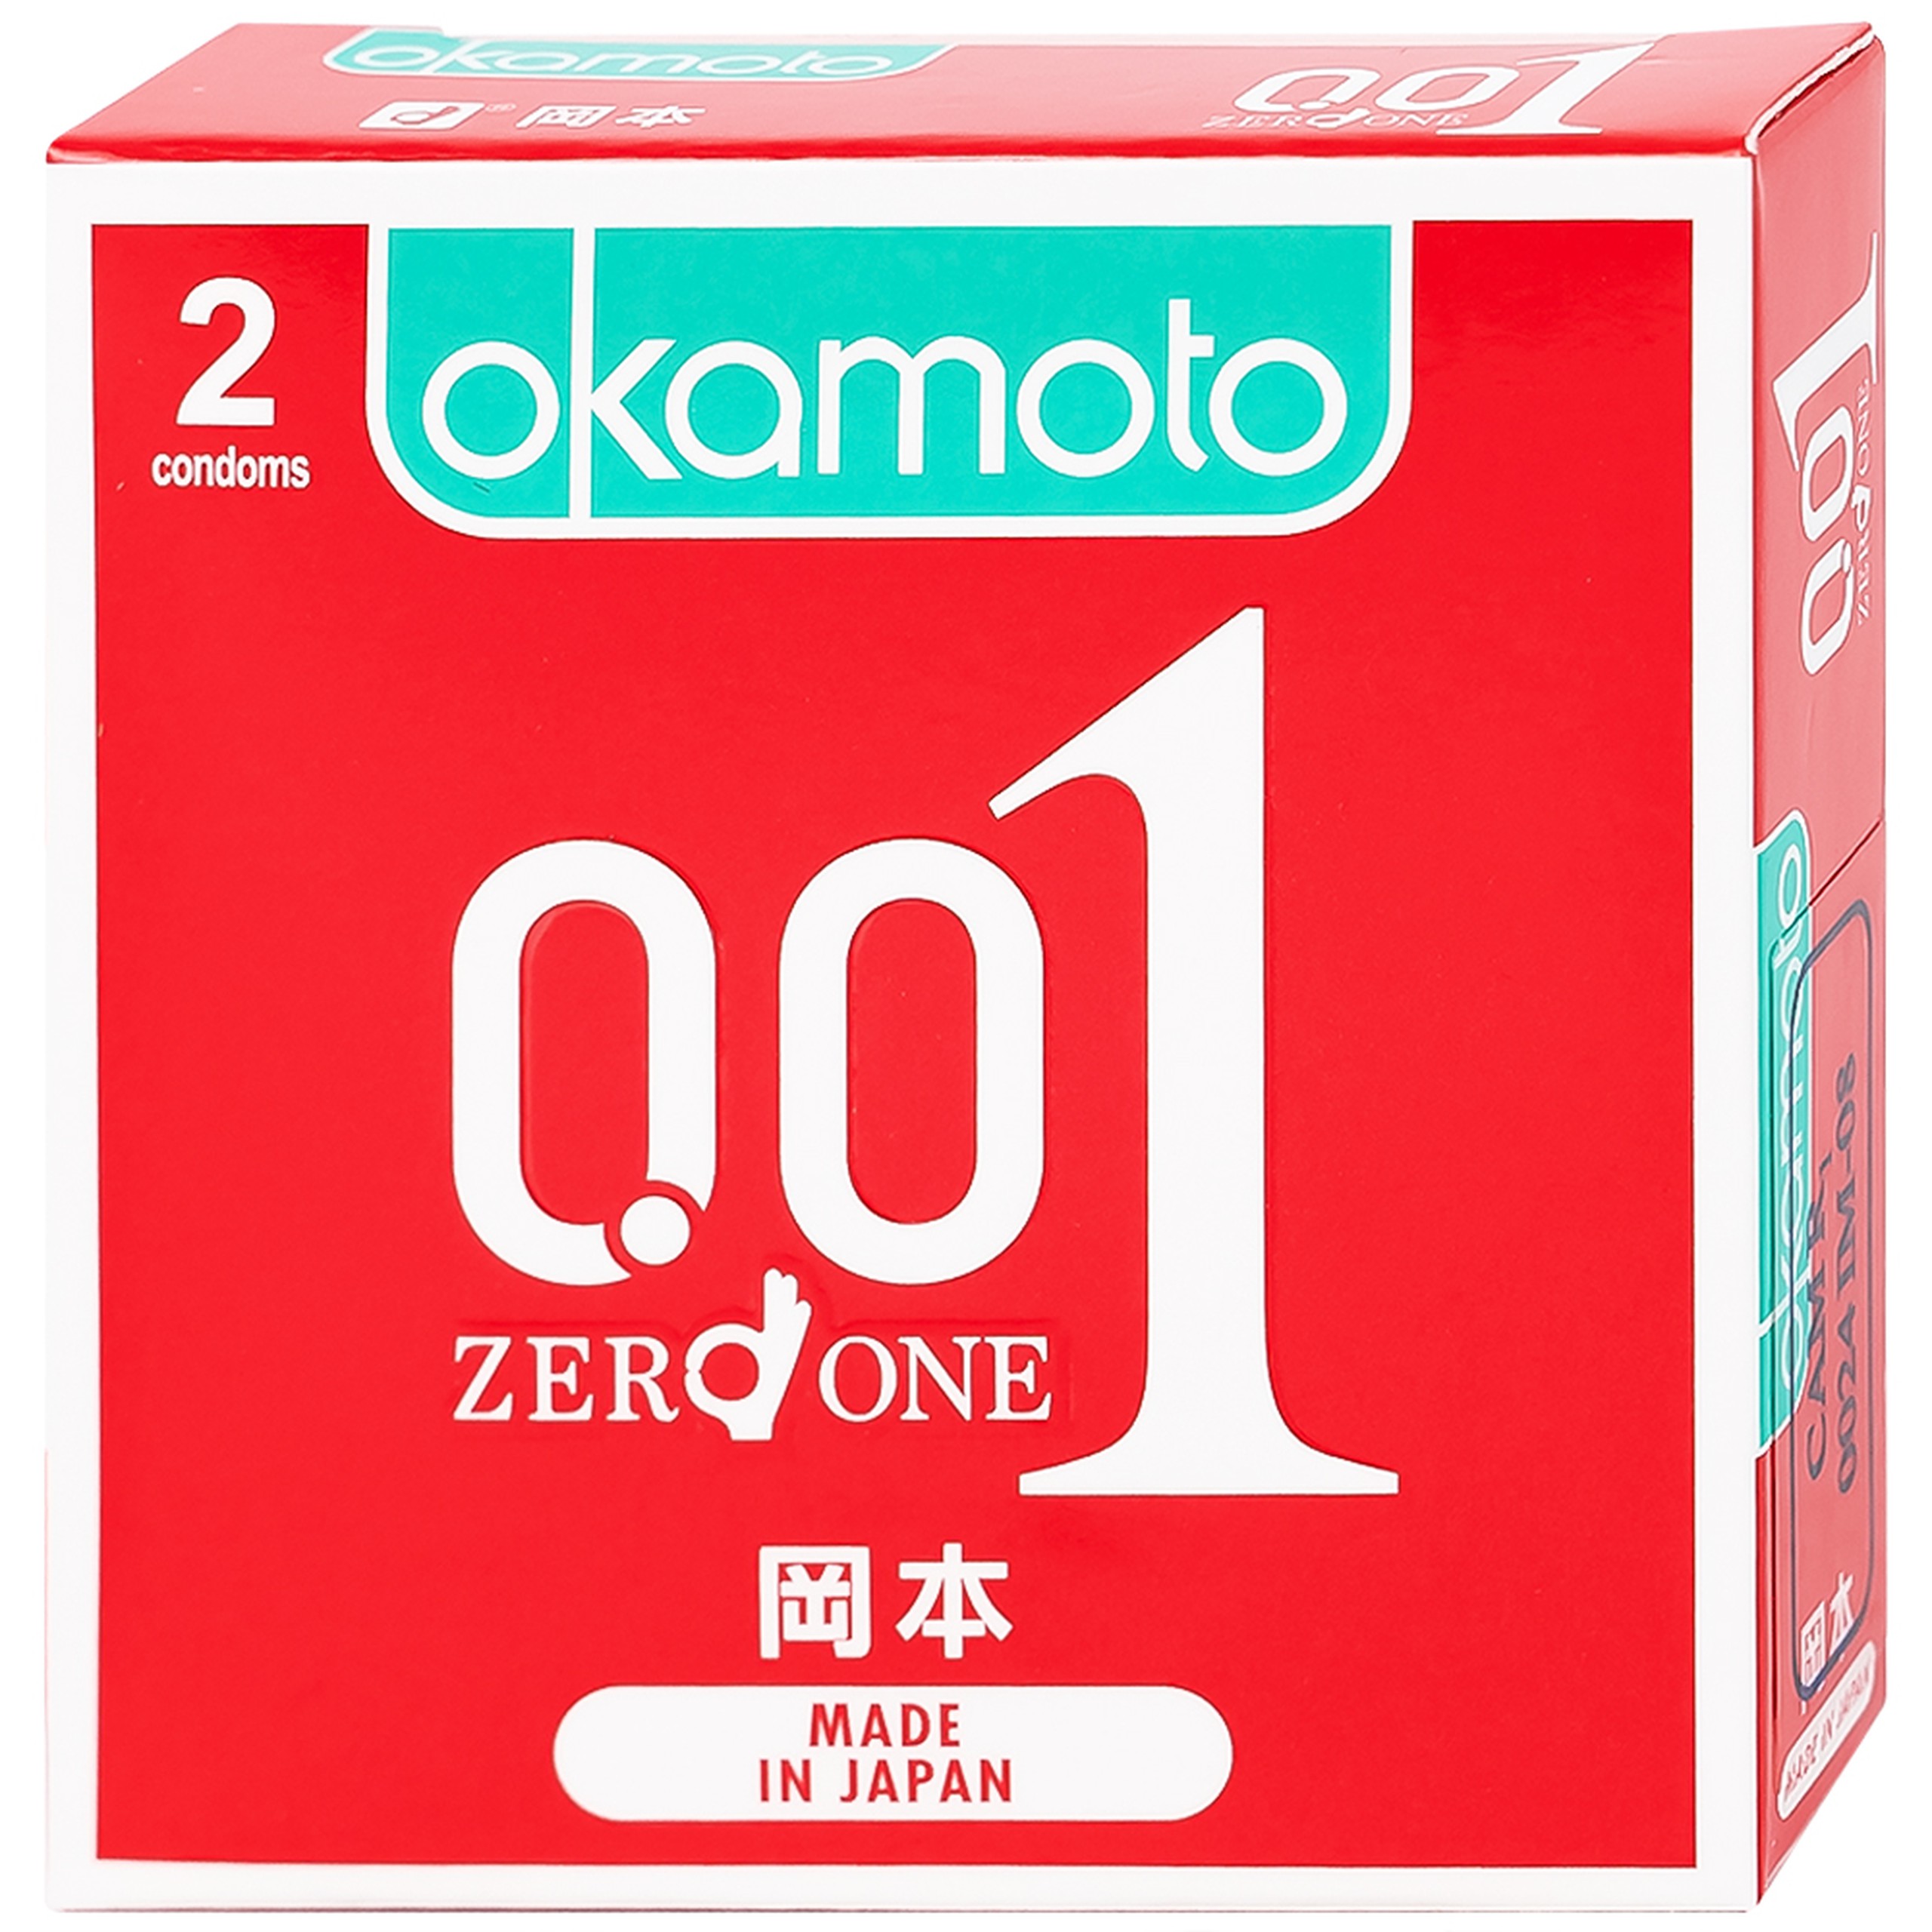 Bao cao su Okamoto 0.01 PU phòng tránh thai, ngăn ngừa HIV và các bệnh lây qua đường tình dục (2 cái)